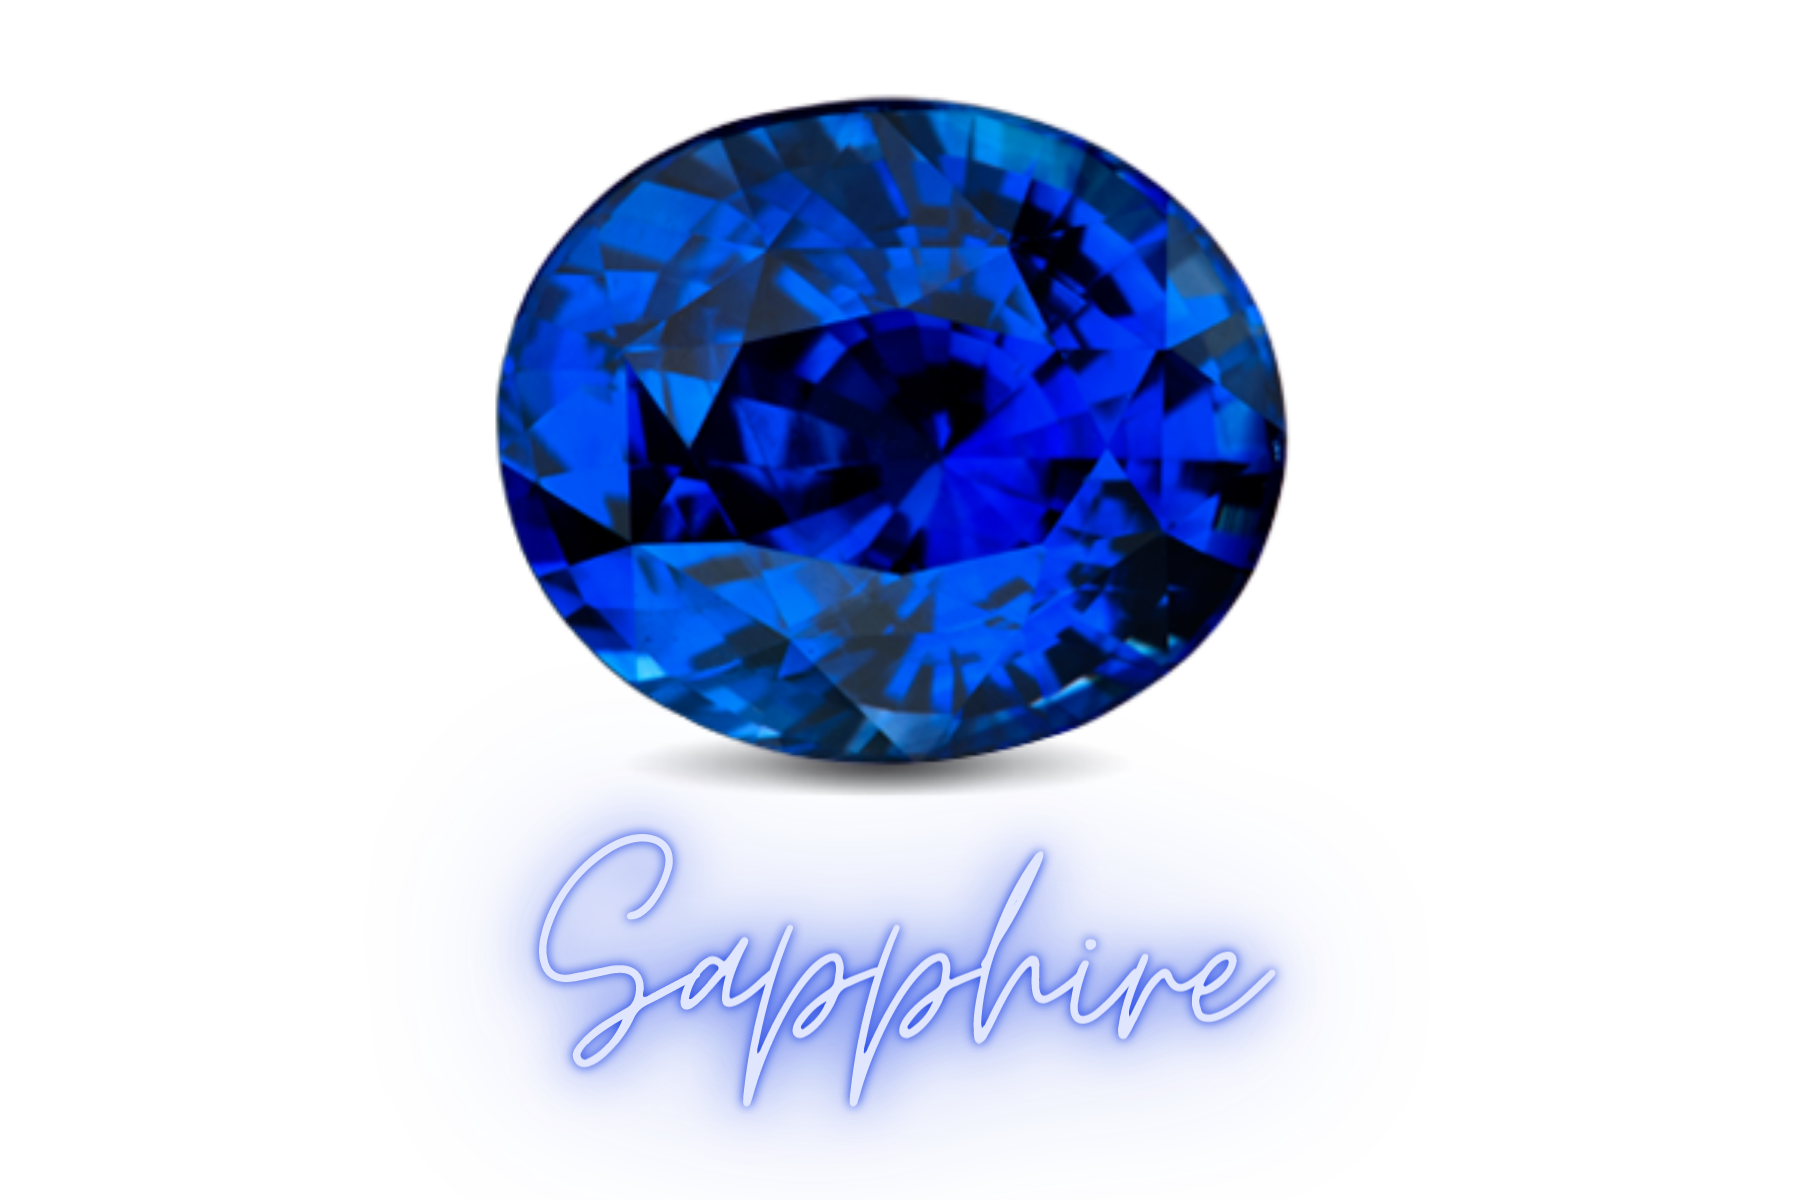 Round Sapphire stone